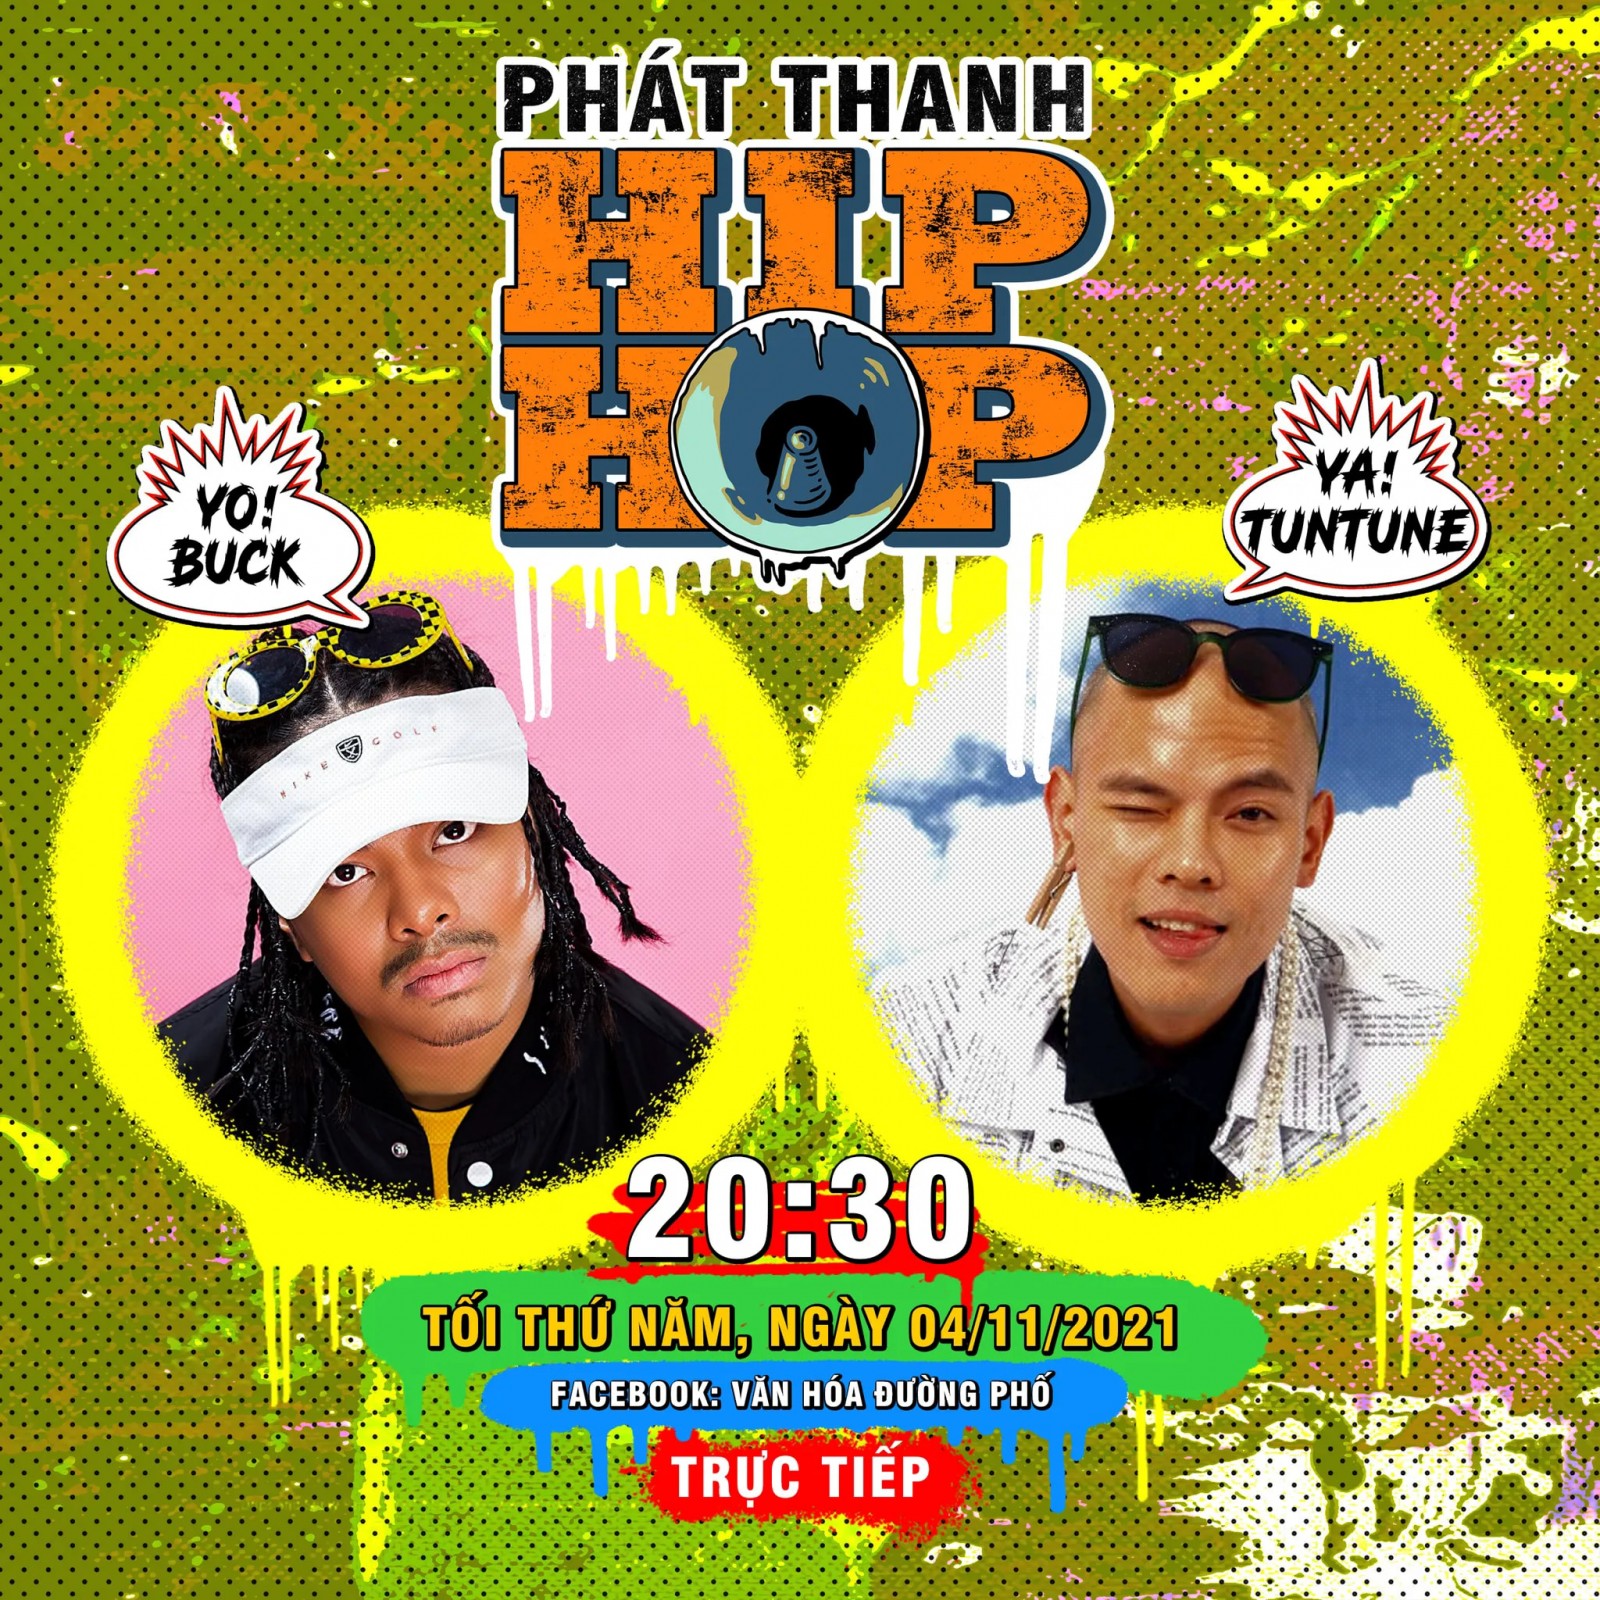 Cùng “Phát thanh Hip Hop” gặp gỡ người gieo mầm cảm hứng nhảy Hip Hop cho thế hệ trẻ khắp Đông Nam Á - Dancer Tun Tune (Nguyễn Anh Tuấn)